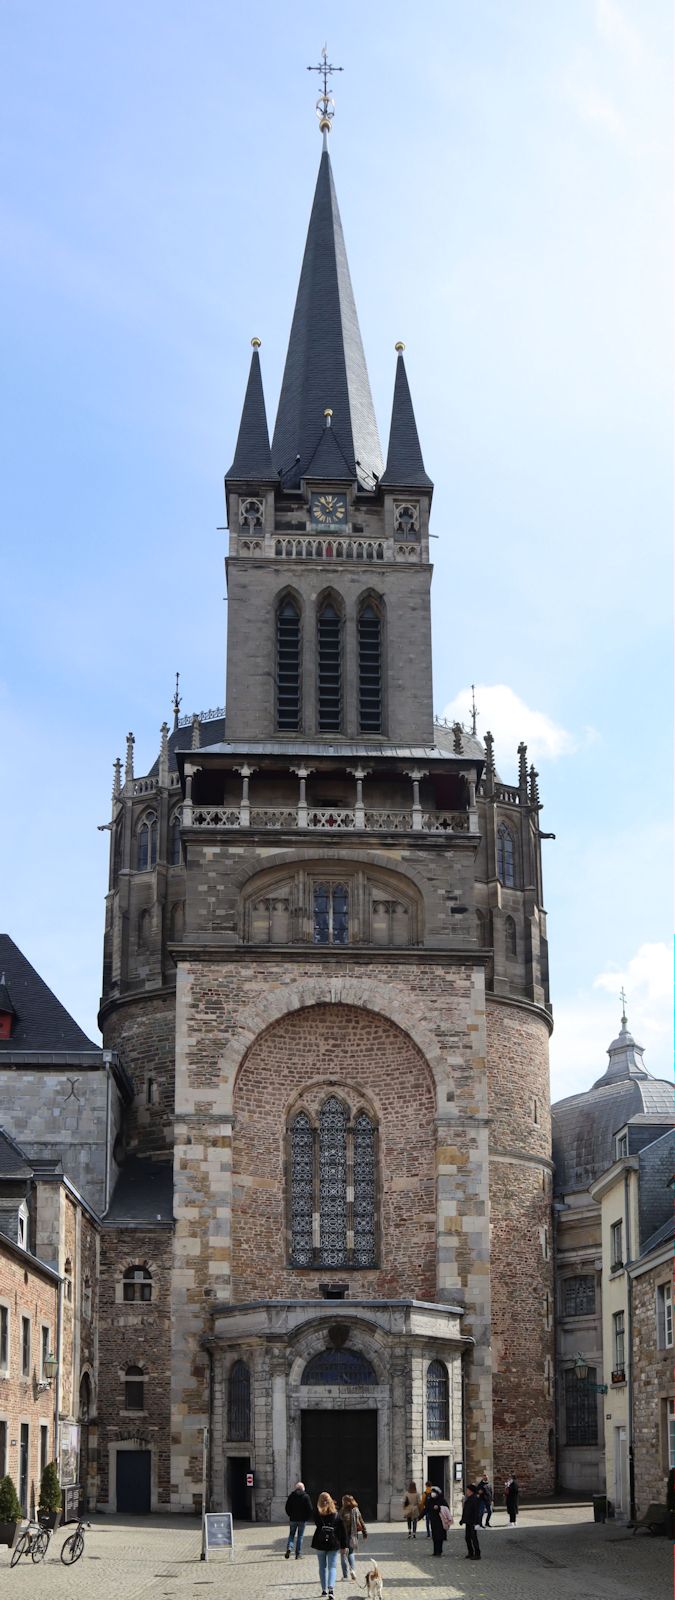 Westfassade des Domes in Aachen